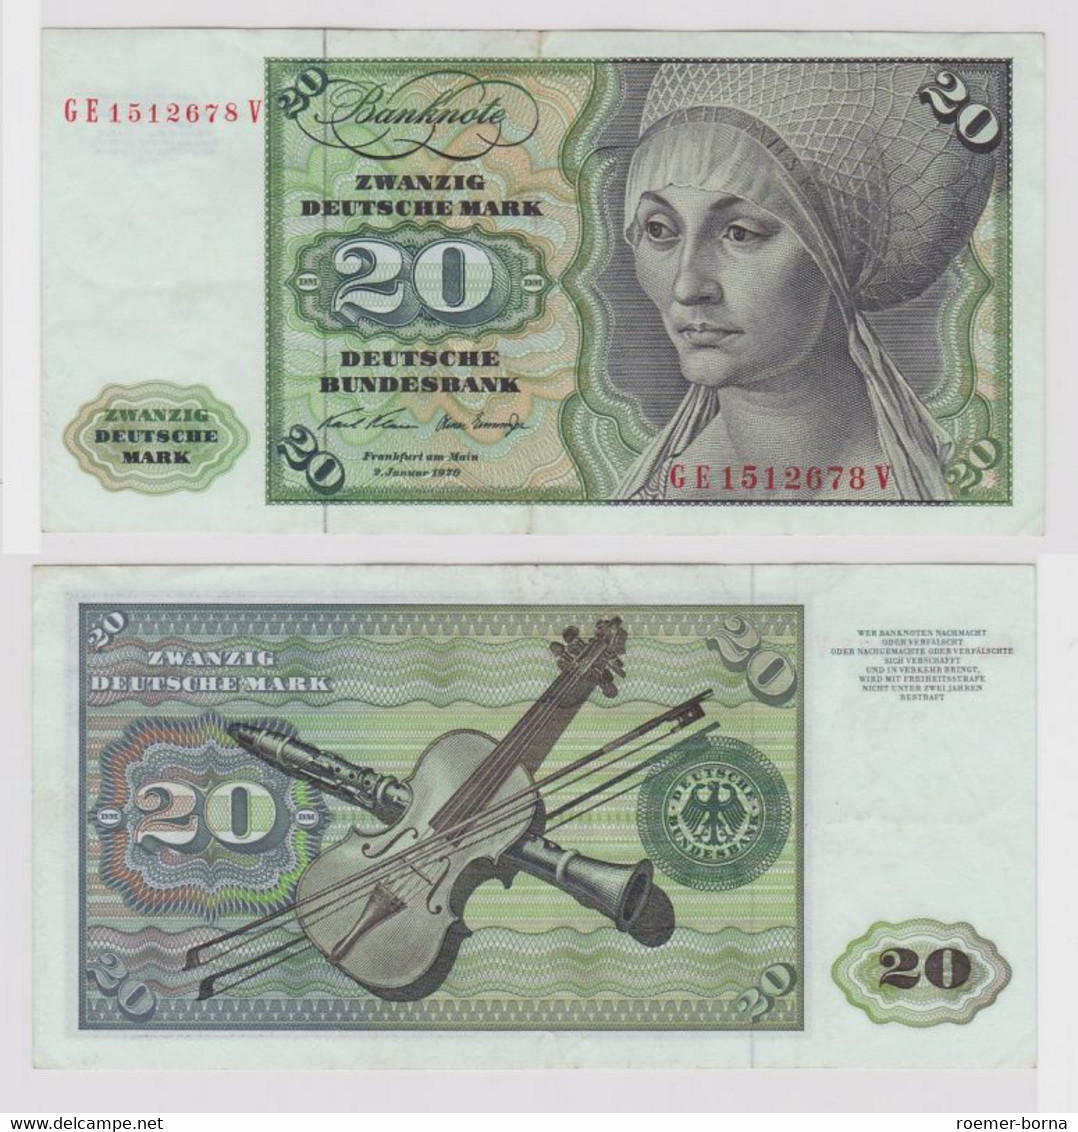 T148707 Banknote 20 DM Deutsche Mark Ro. 271b Schein 2.Jan. 1970 KN GE 1512678 V - 20 Deutsche Mark